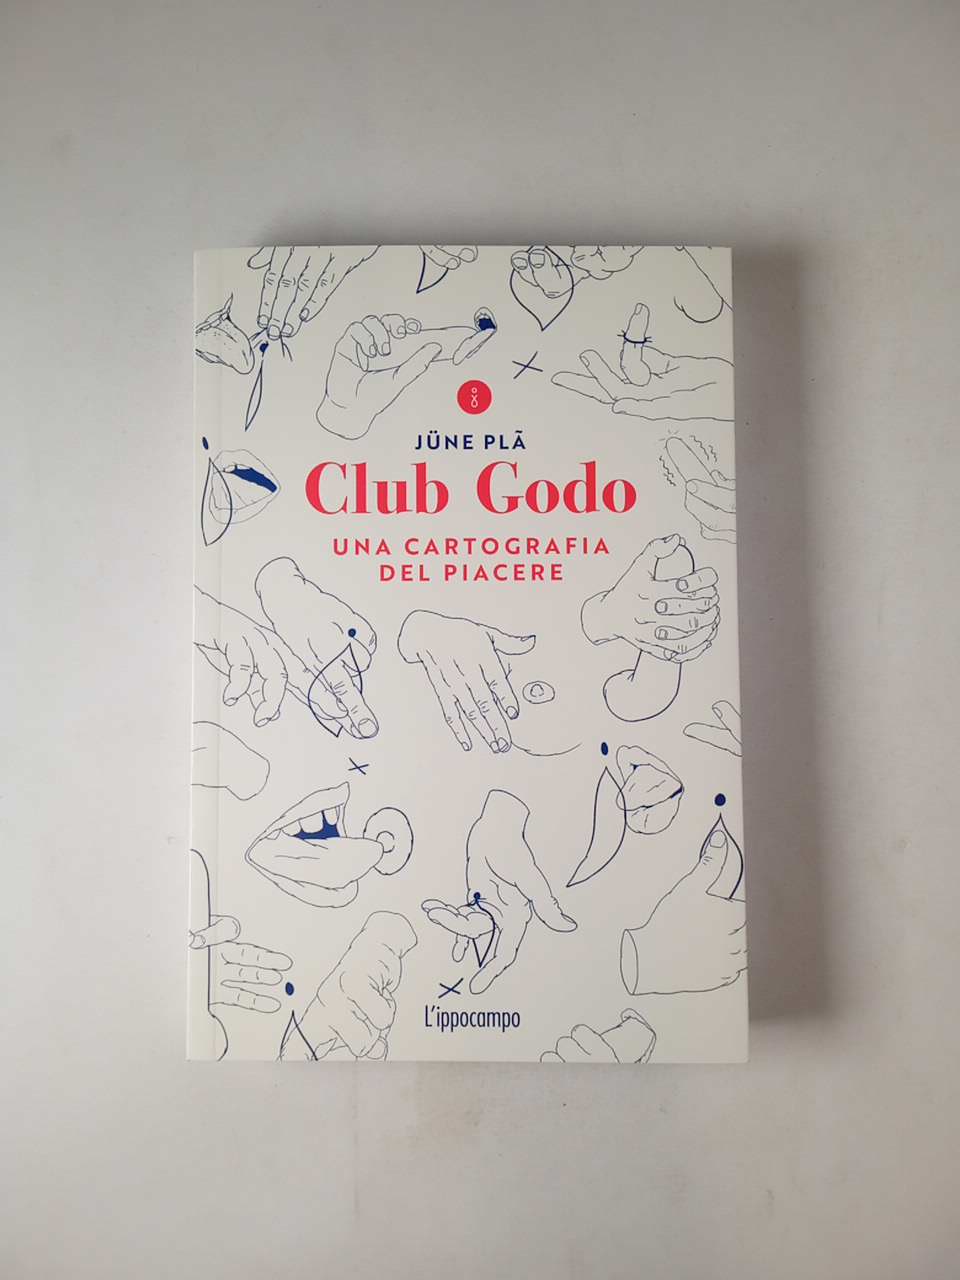 June Pla - Club Godo. Una cartografia del piacere. - L'ippocampo 2020 -  Semi d'inchiostro